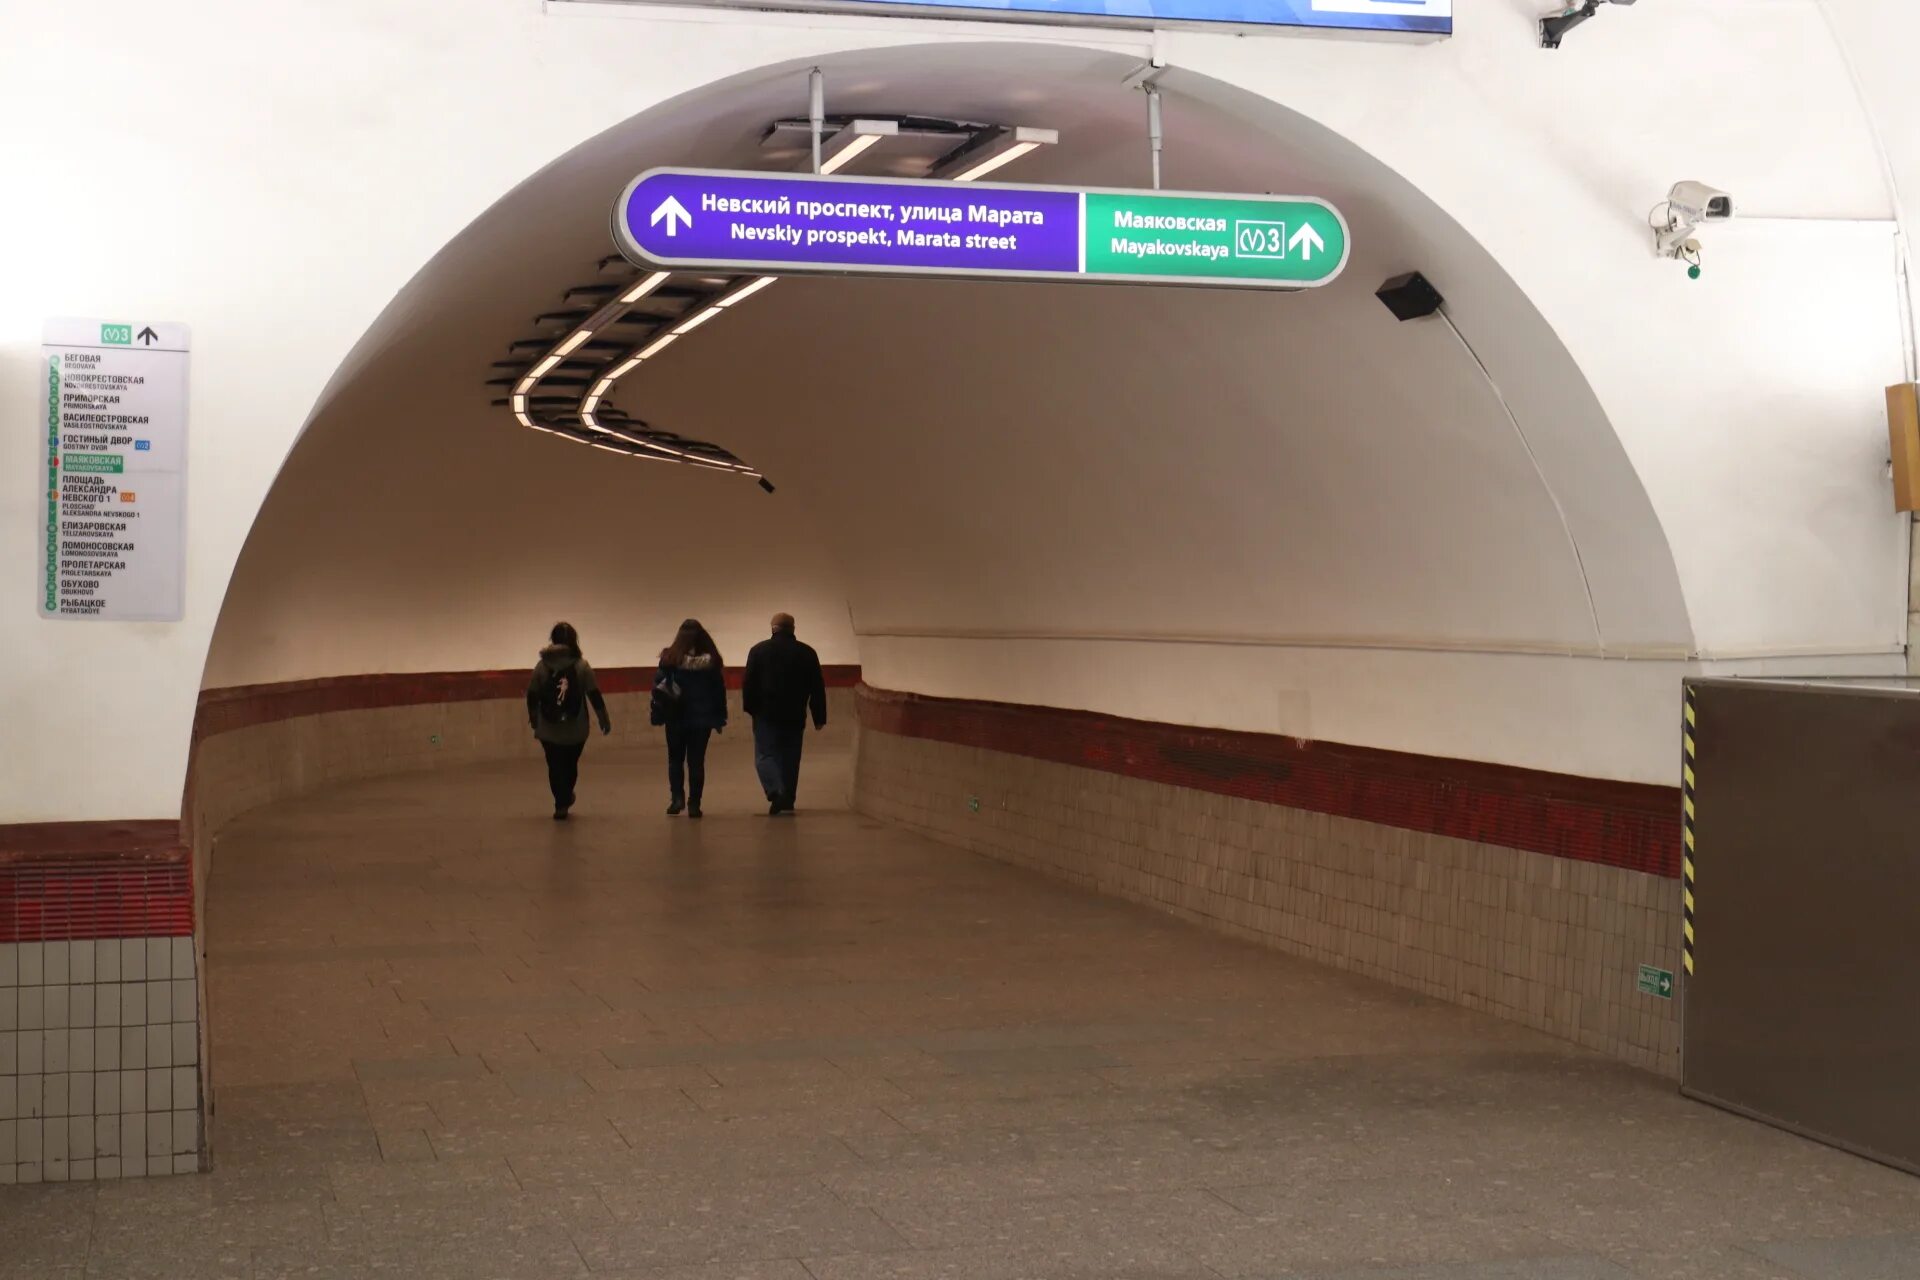 Станция площадь Восстания Санкт-Петербург 1 линия метро. Станция метро площадь Восстания СПБ. Вестибюль метро площадь Восстания 2. Площадь Восстания Питер метро ветка.